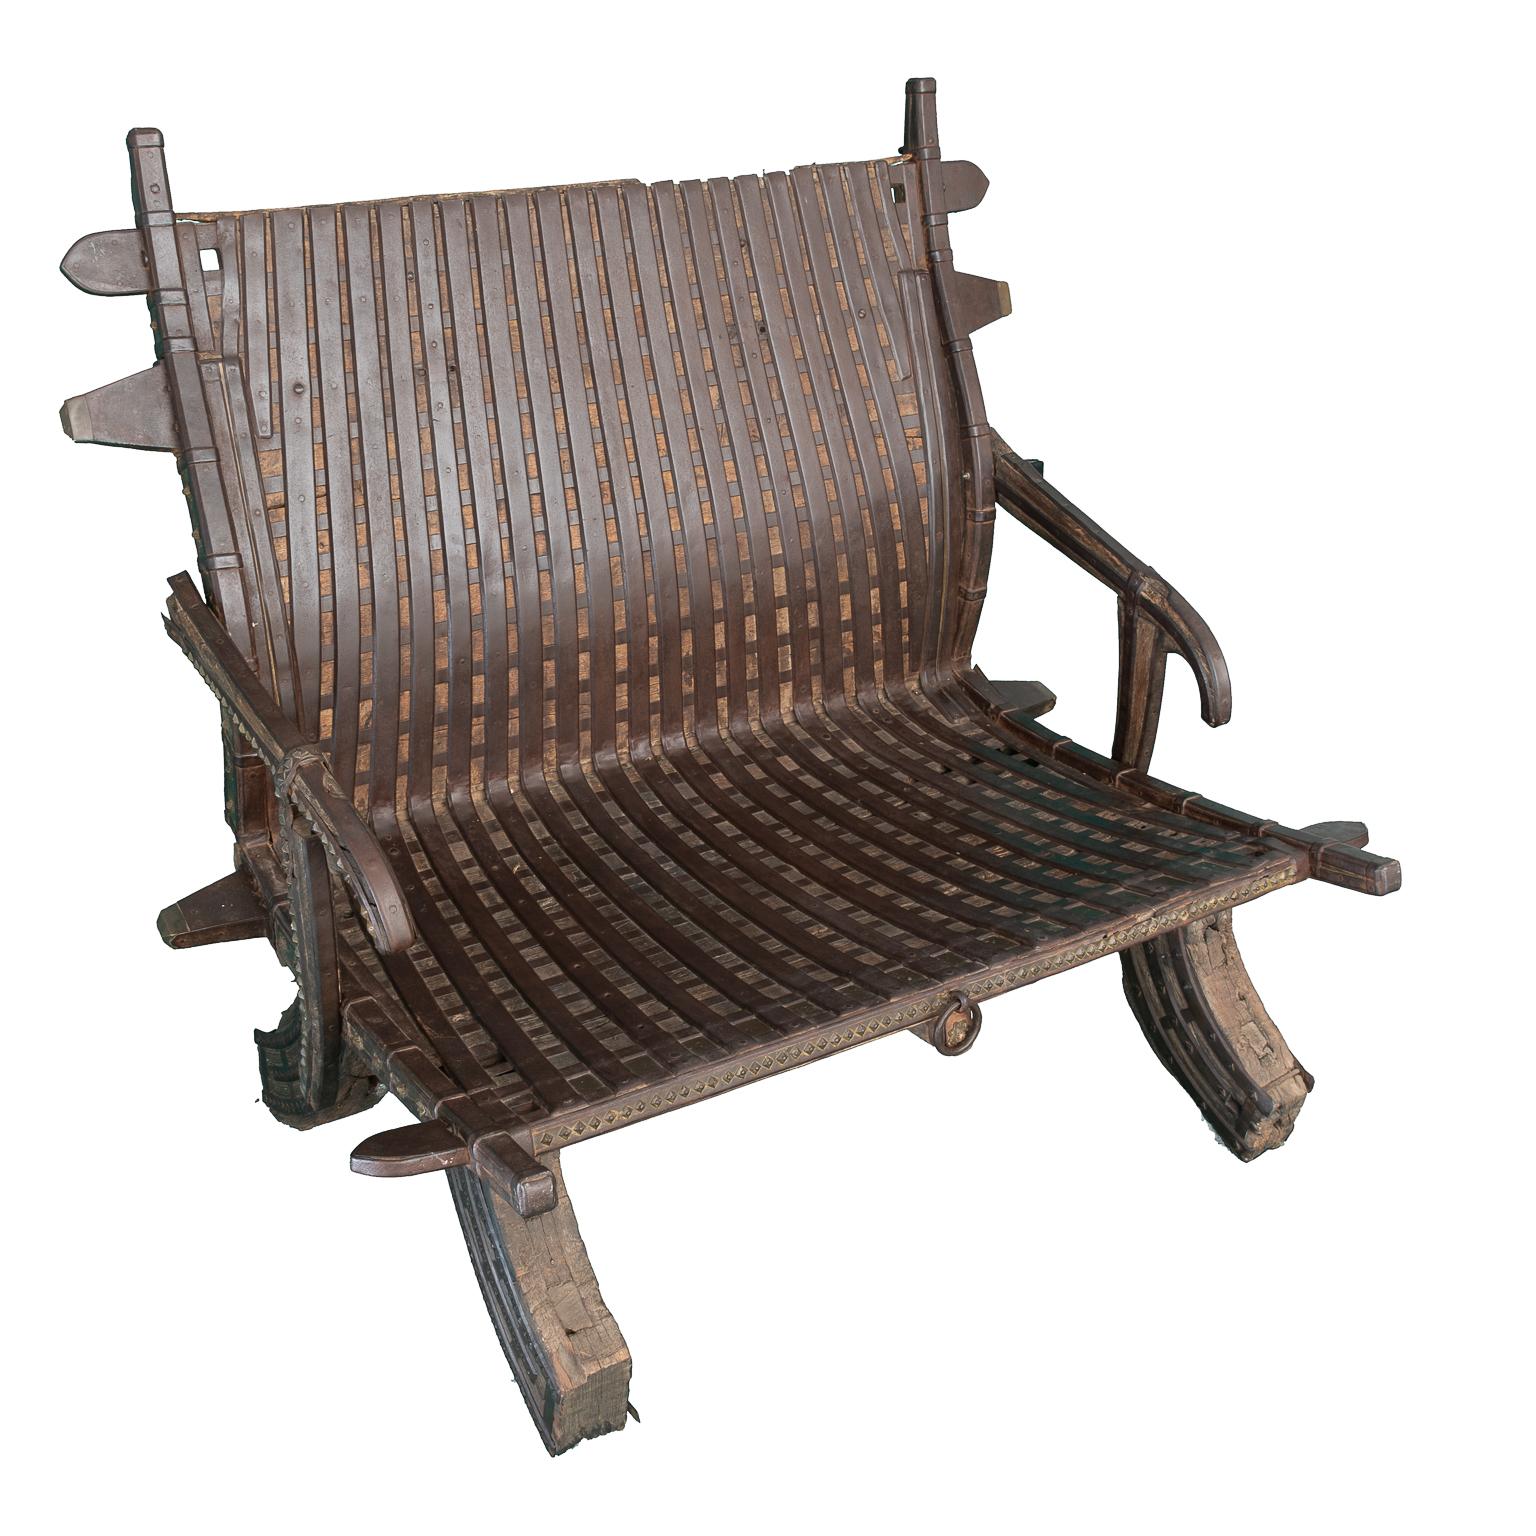 Chaise hindoue, ancienne du début du 18ème siècle, en bois avec du fer forgé, elle présente des usures et des détériorations dues à l'ancienneté.